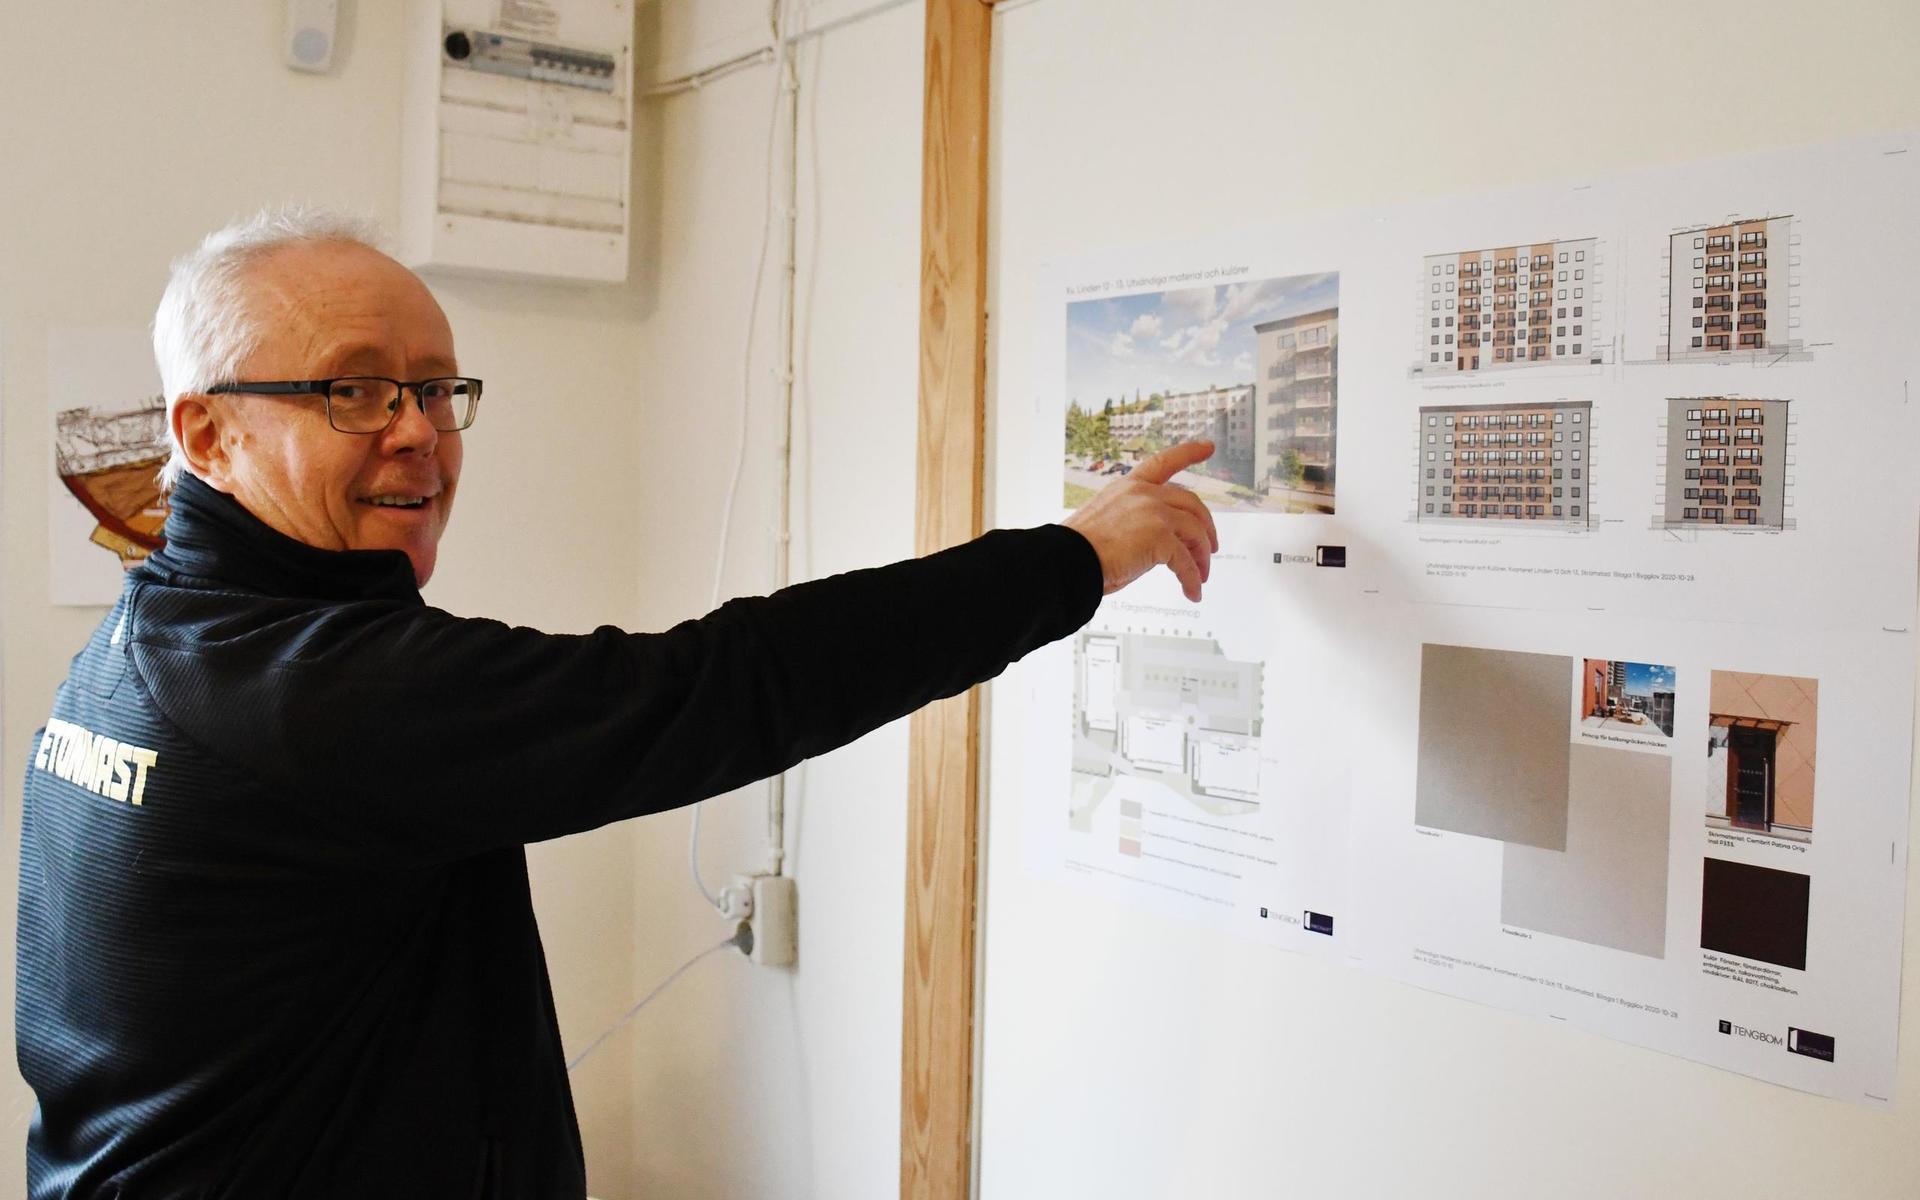 Strömstadsbon Anders Karlsson är projektchef för Betonmast Göteborg. Inne på företagets kontor i Strömstad hänger skisser på flerbostadshusen som beräknas stå klara för inflyttning i slutet av 2022.